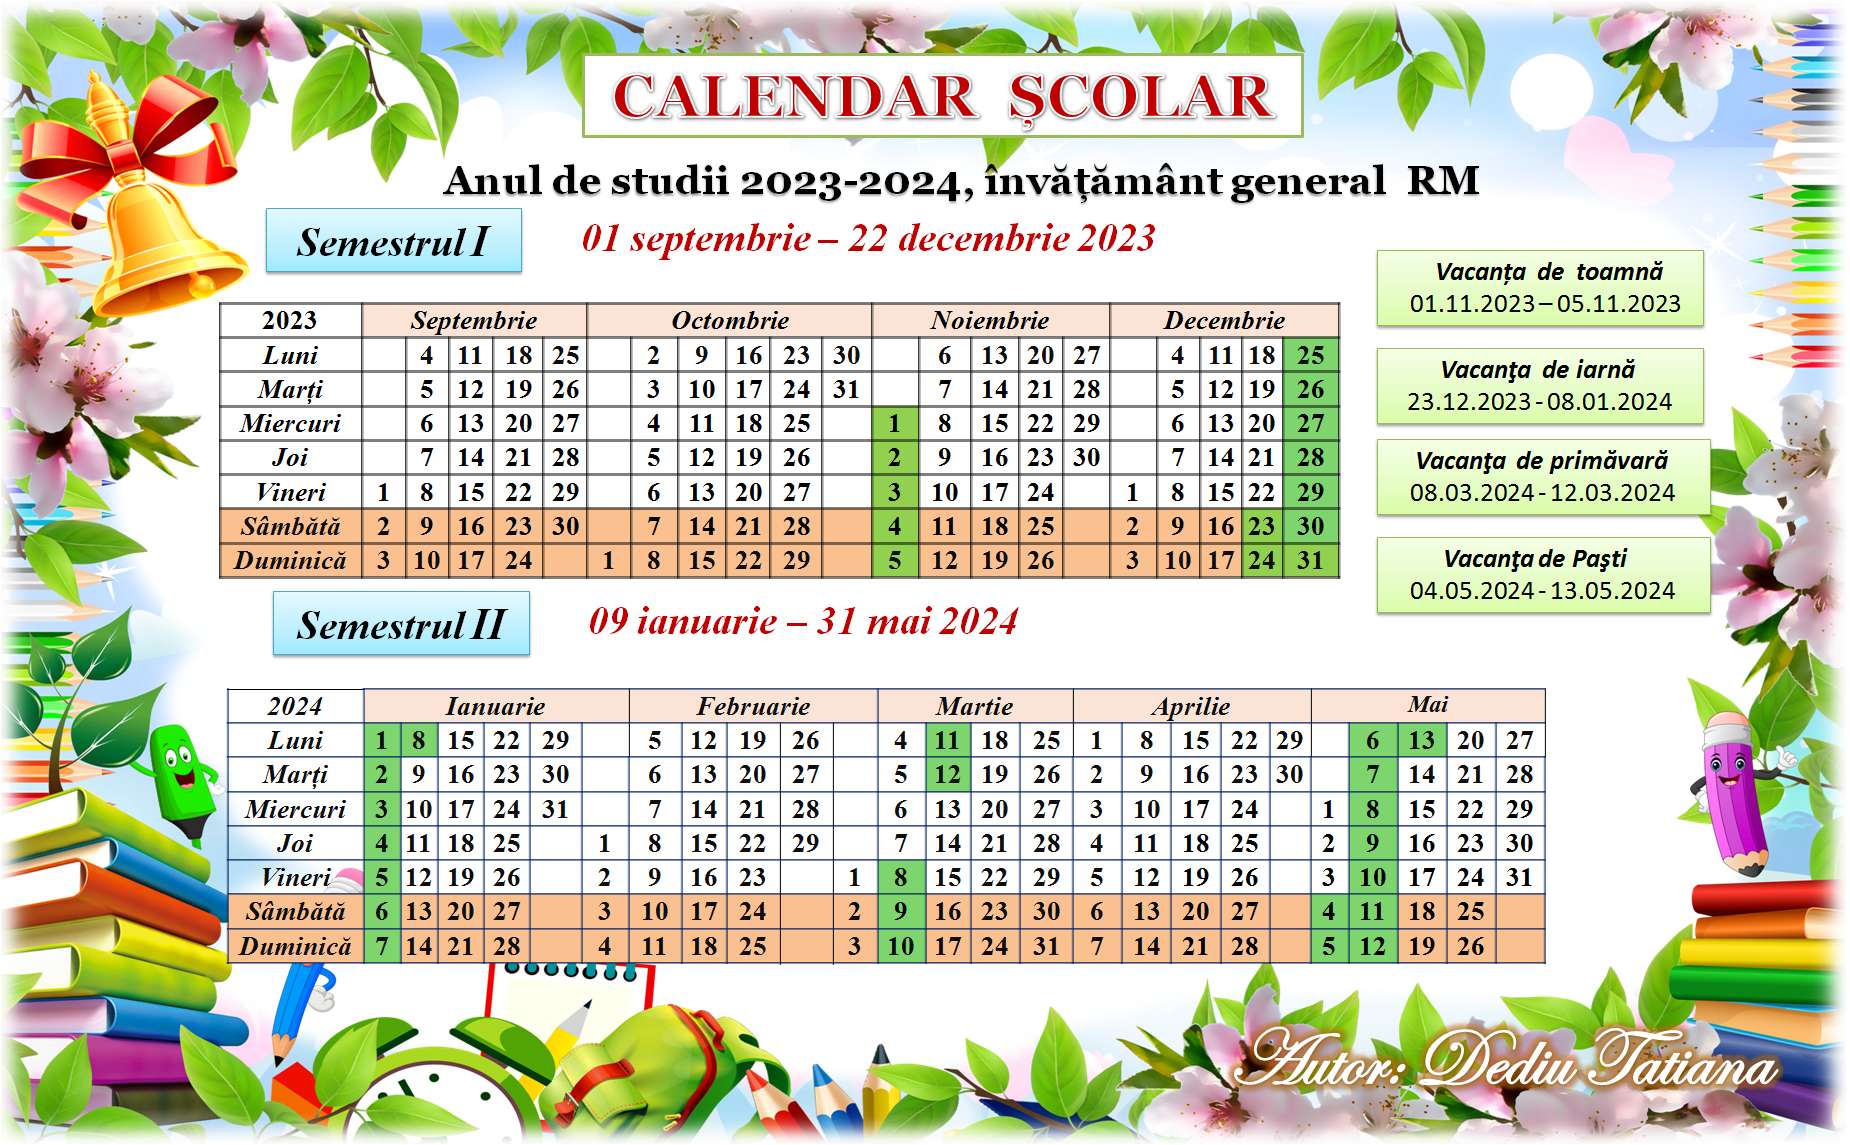 Calendar scolar 2023-2024 (1) (2)